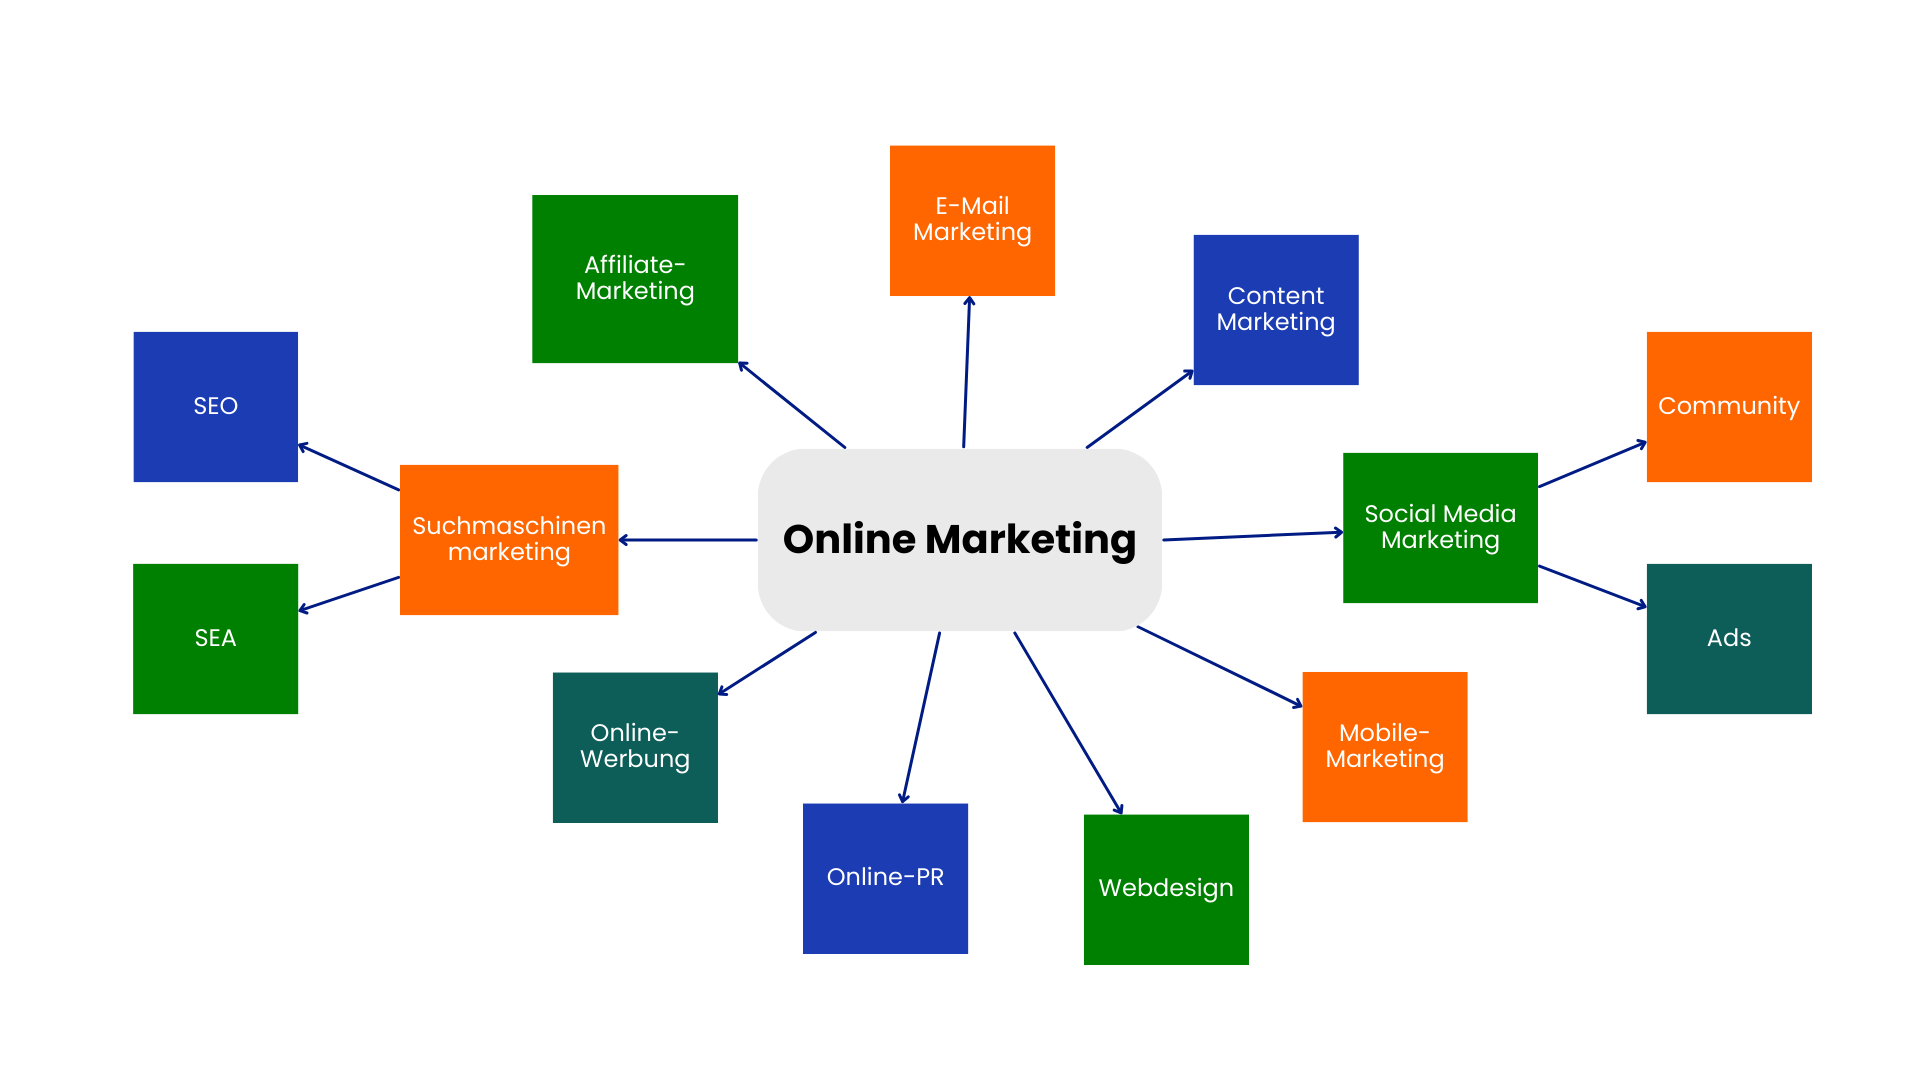 In der Mitte Online Marketing. Darum herum befinden sich Webdesign, Mobile Marketing, Social Media Marketing mit Ads & Community, Content Marketing, E-Mail Marketing, Affiliate Marketing, Suchmaschinenmarketing mit SEO & SEA, Online-Werbung, Online-PR.